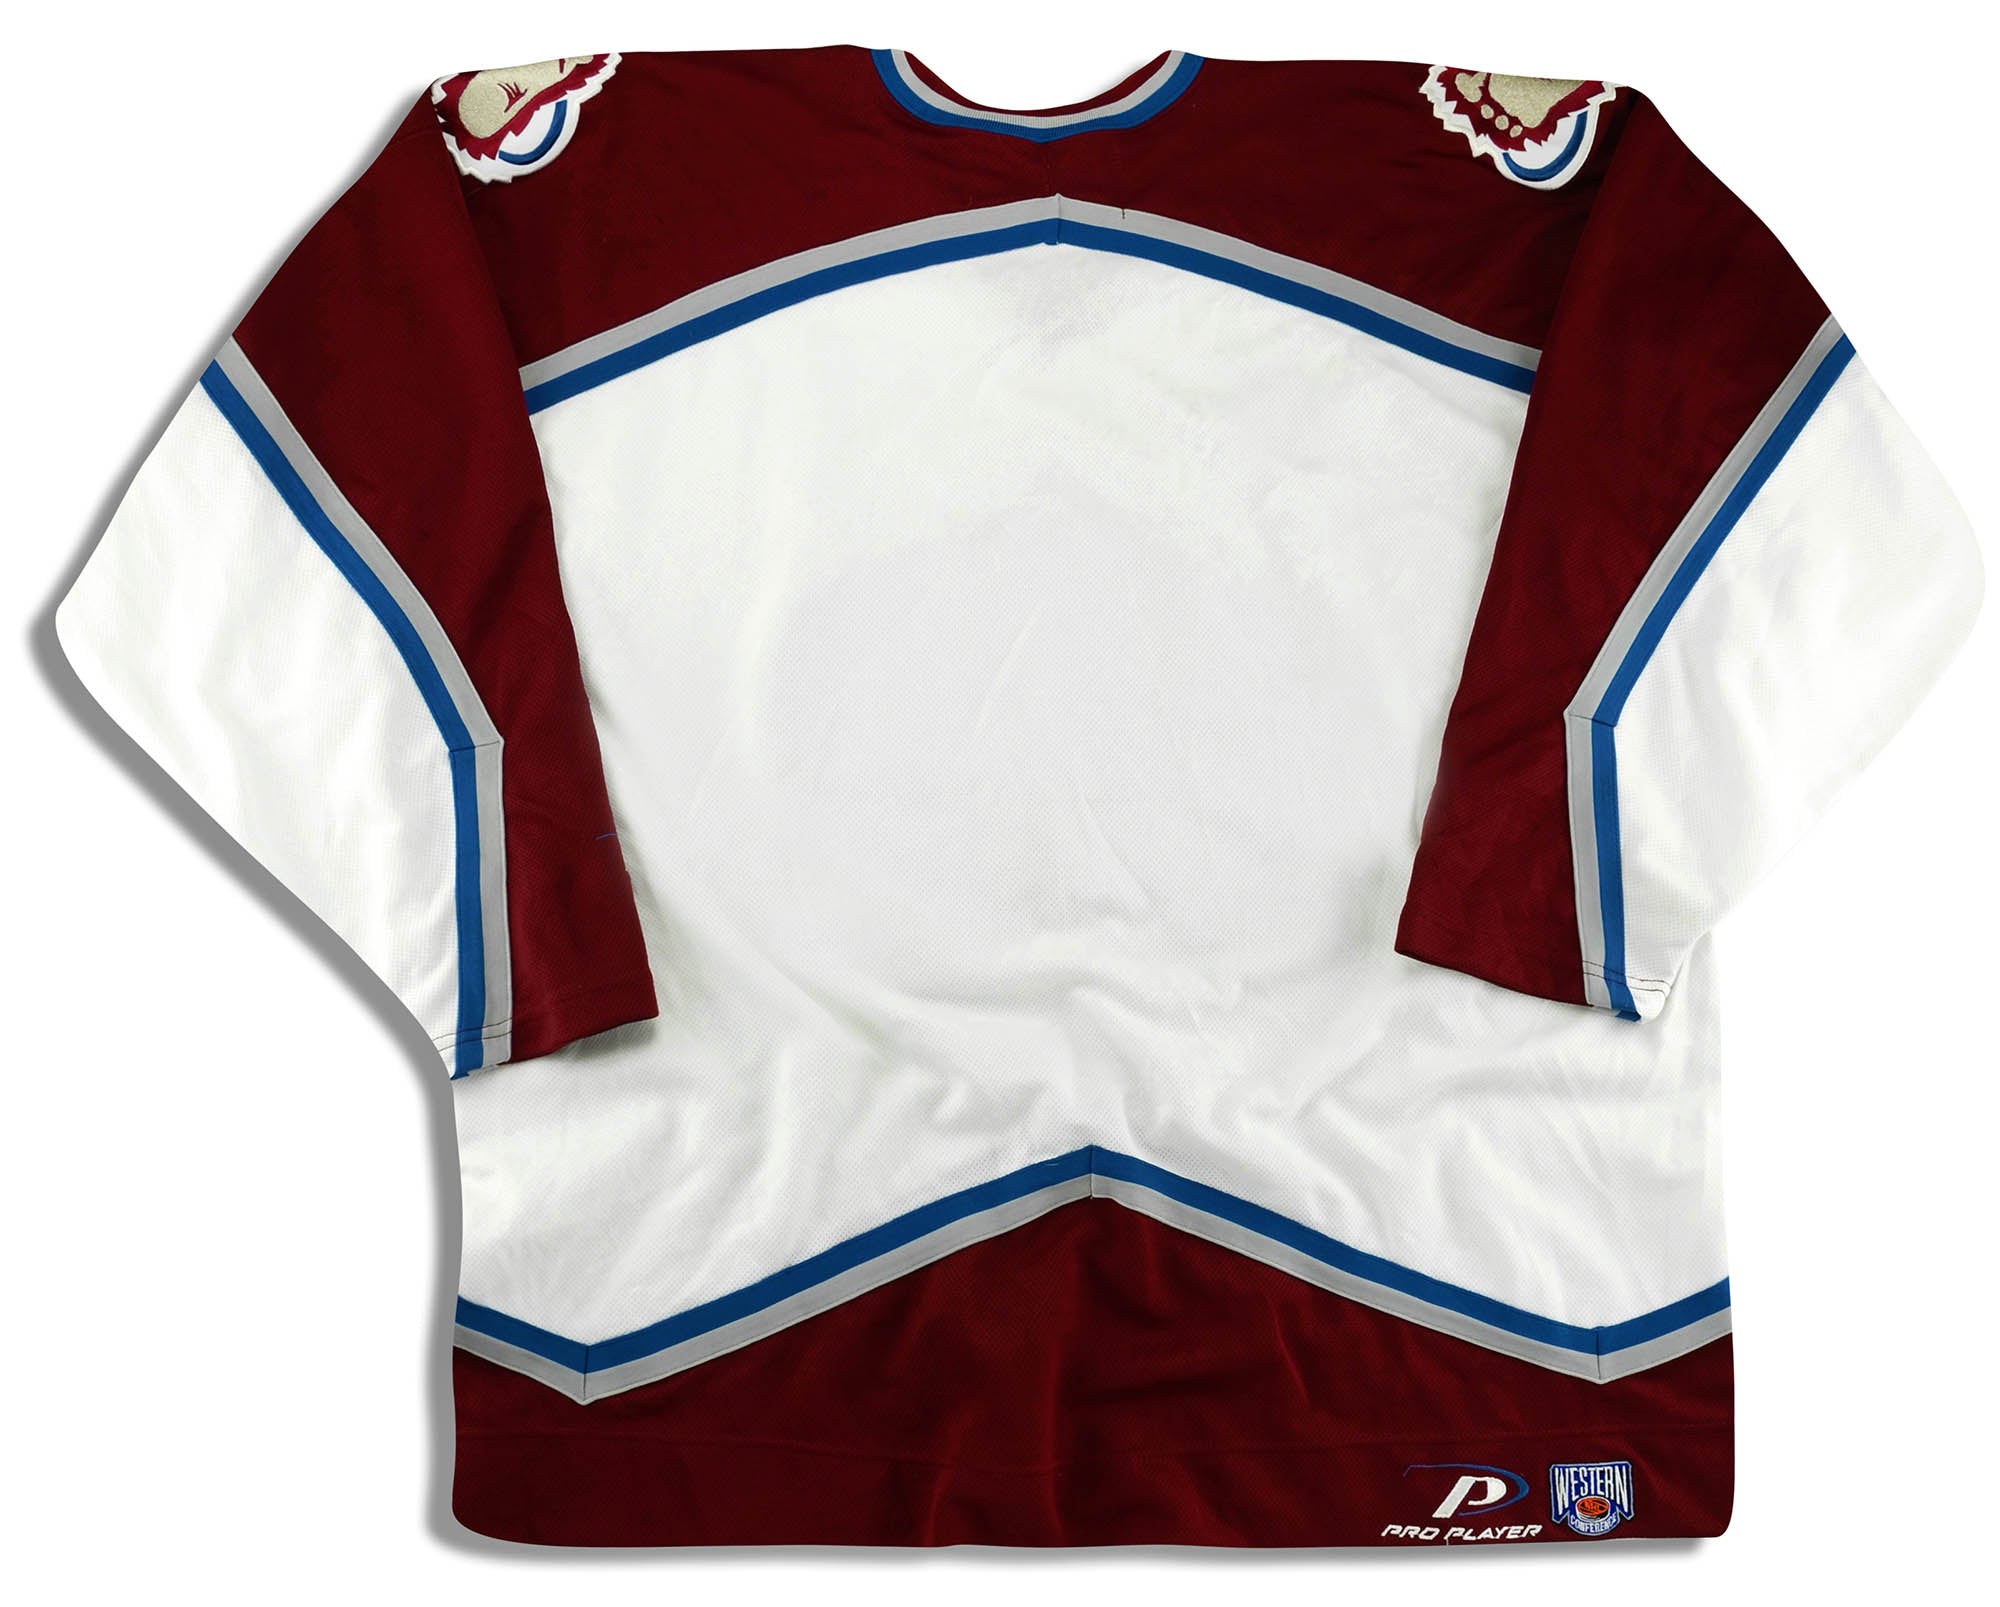 Vintage Colorado Avalanche Jersey NHL Size Youth S 